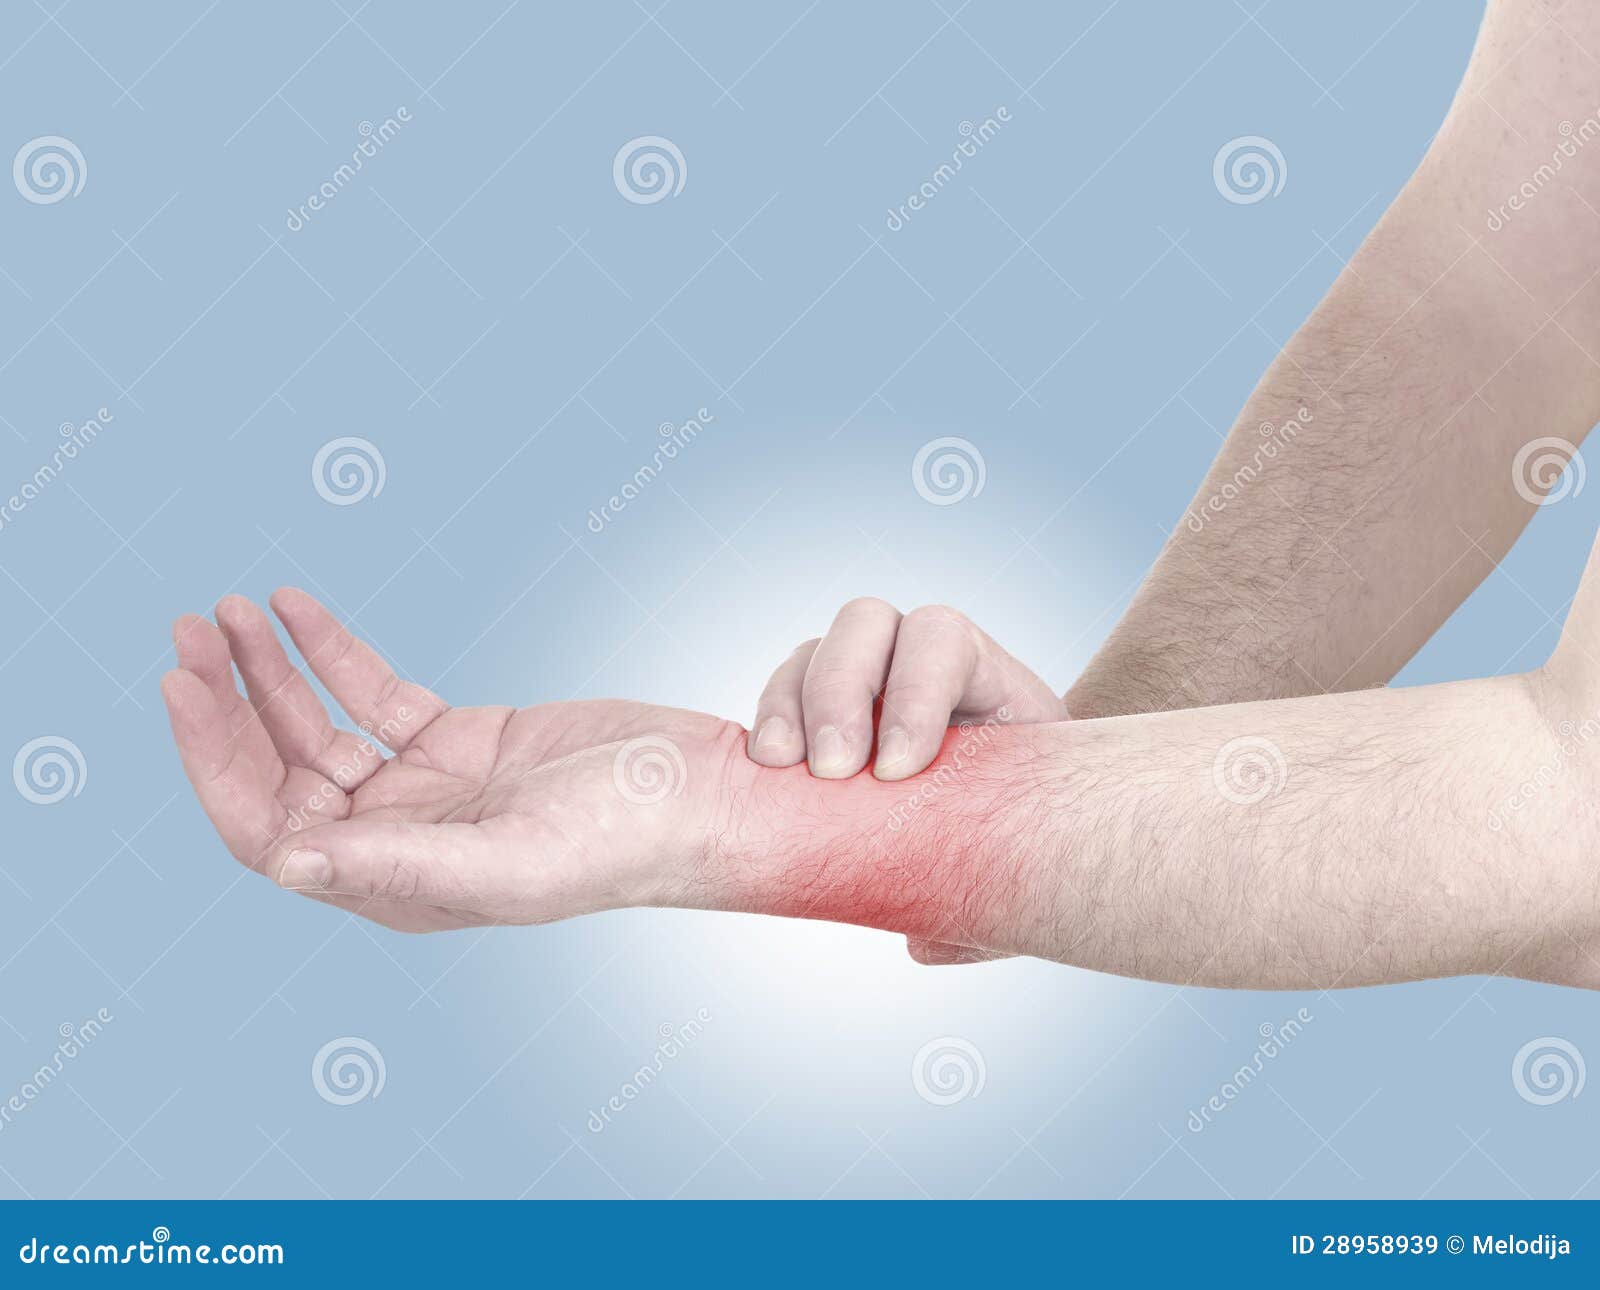 Болит рука запястье чем лечить. Боль в руке. Боль в запястье левой руки. Болит лучезапястный сустав левой руки.